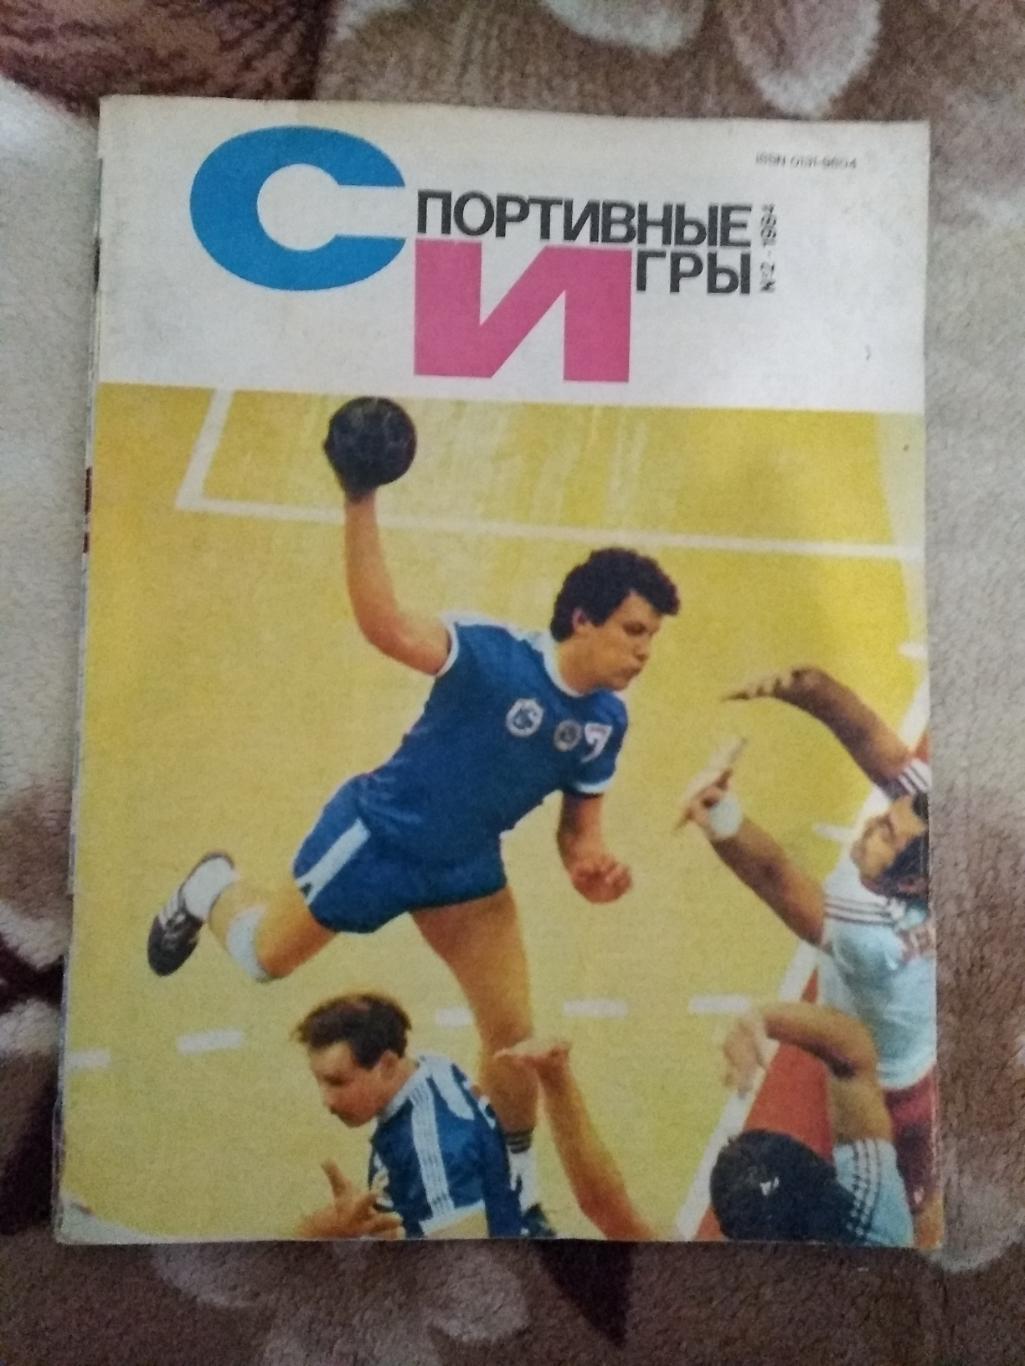 Журнал.Спортивные игры № 2 1984 г.